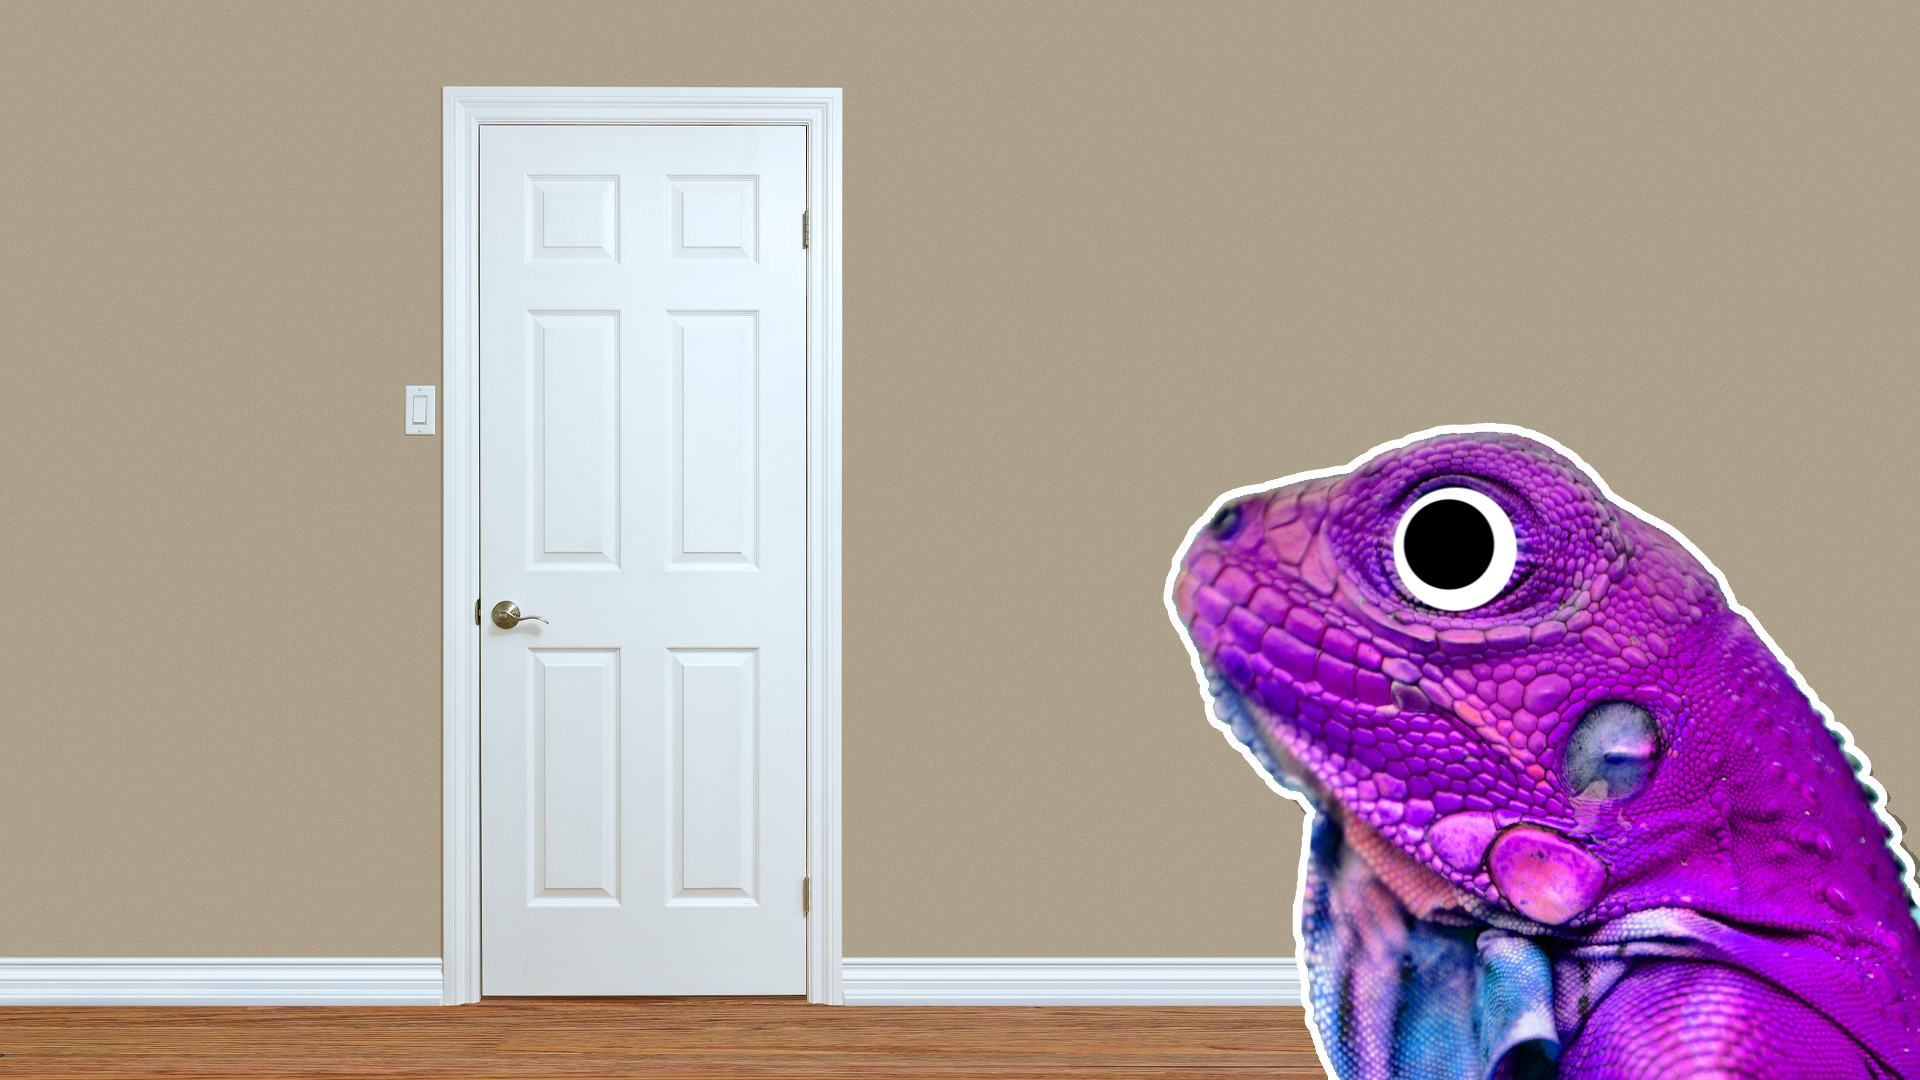 A chameleon next to a bedroom door